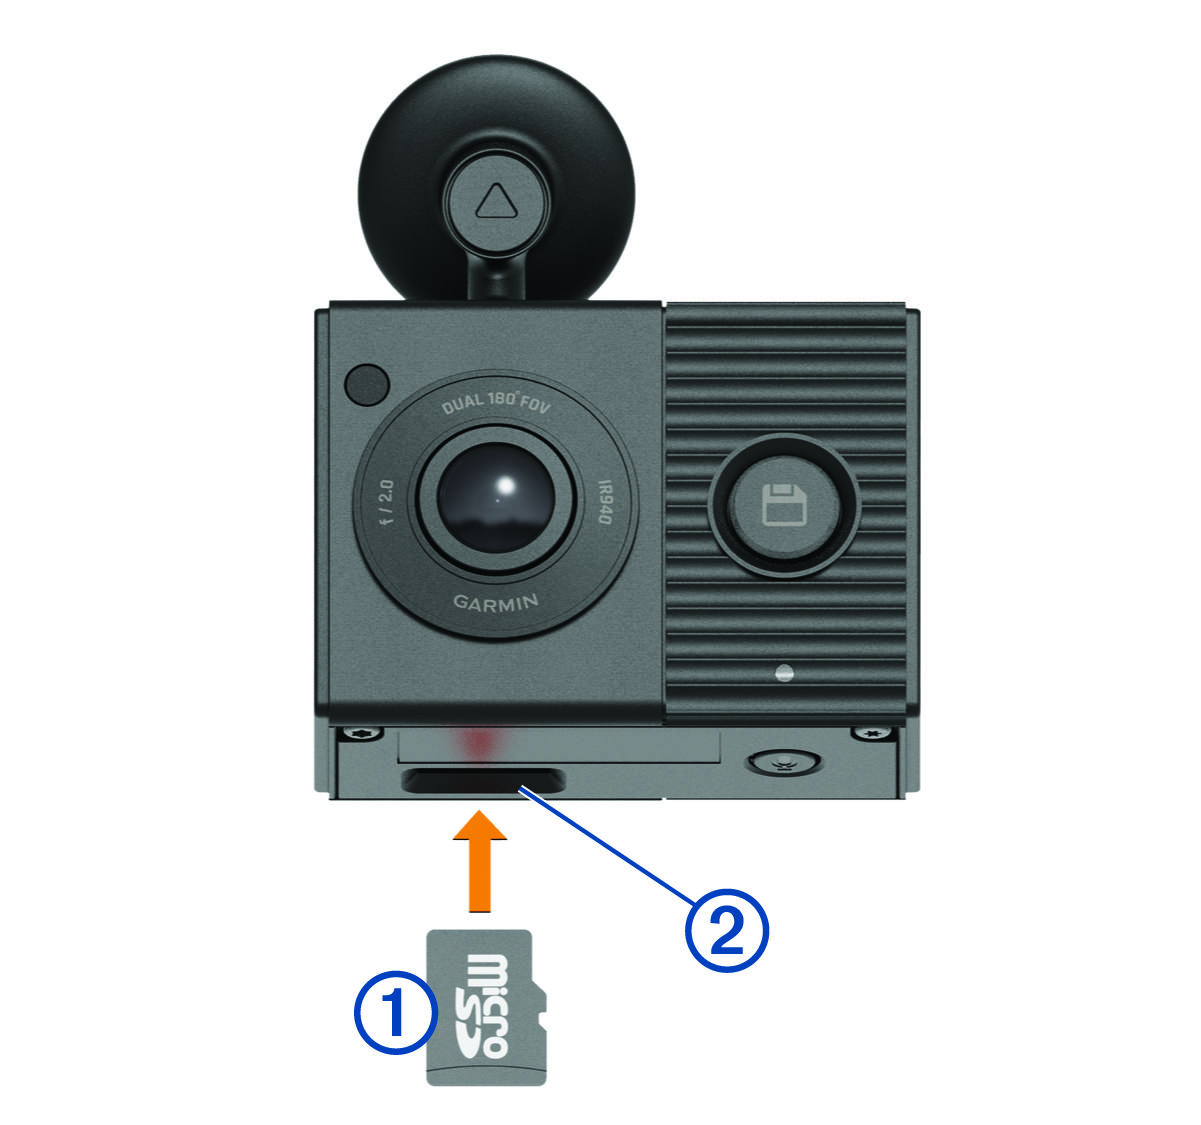 Instalación de la tarjeta MicroSD en la ranura de la parte inferior de la cámara